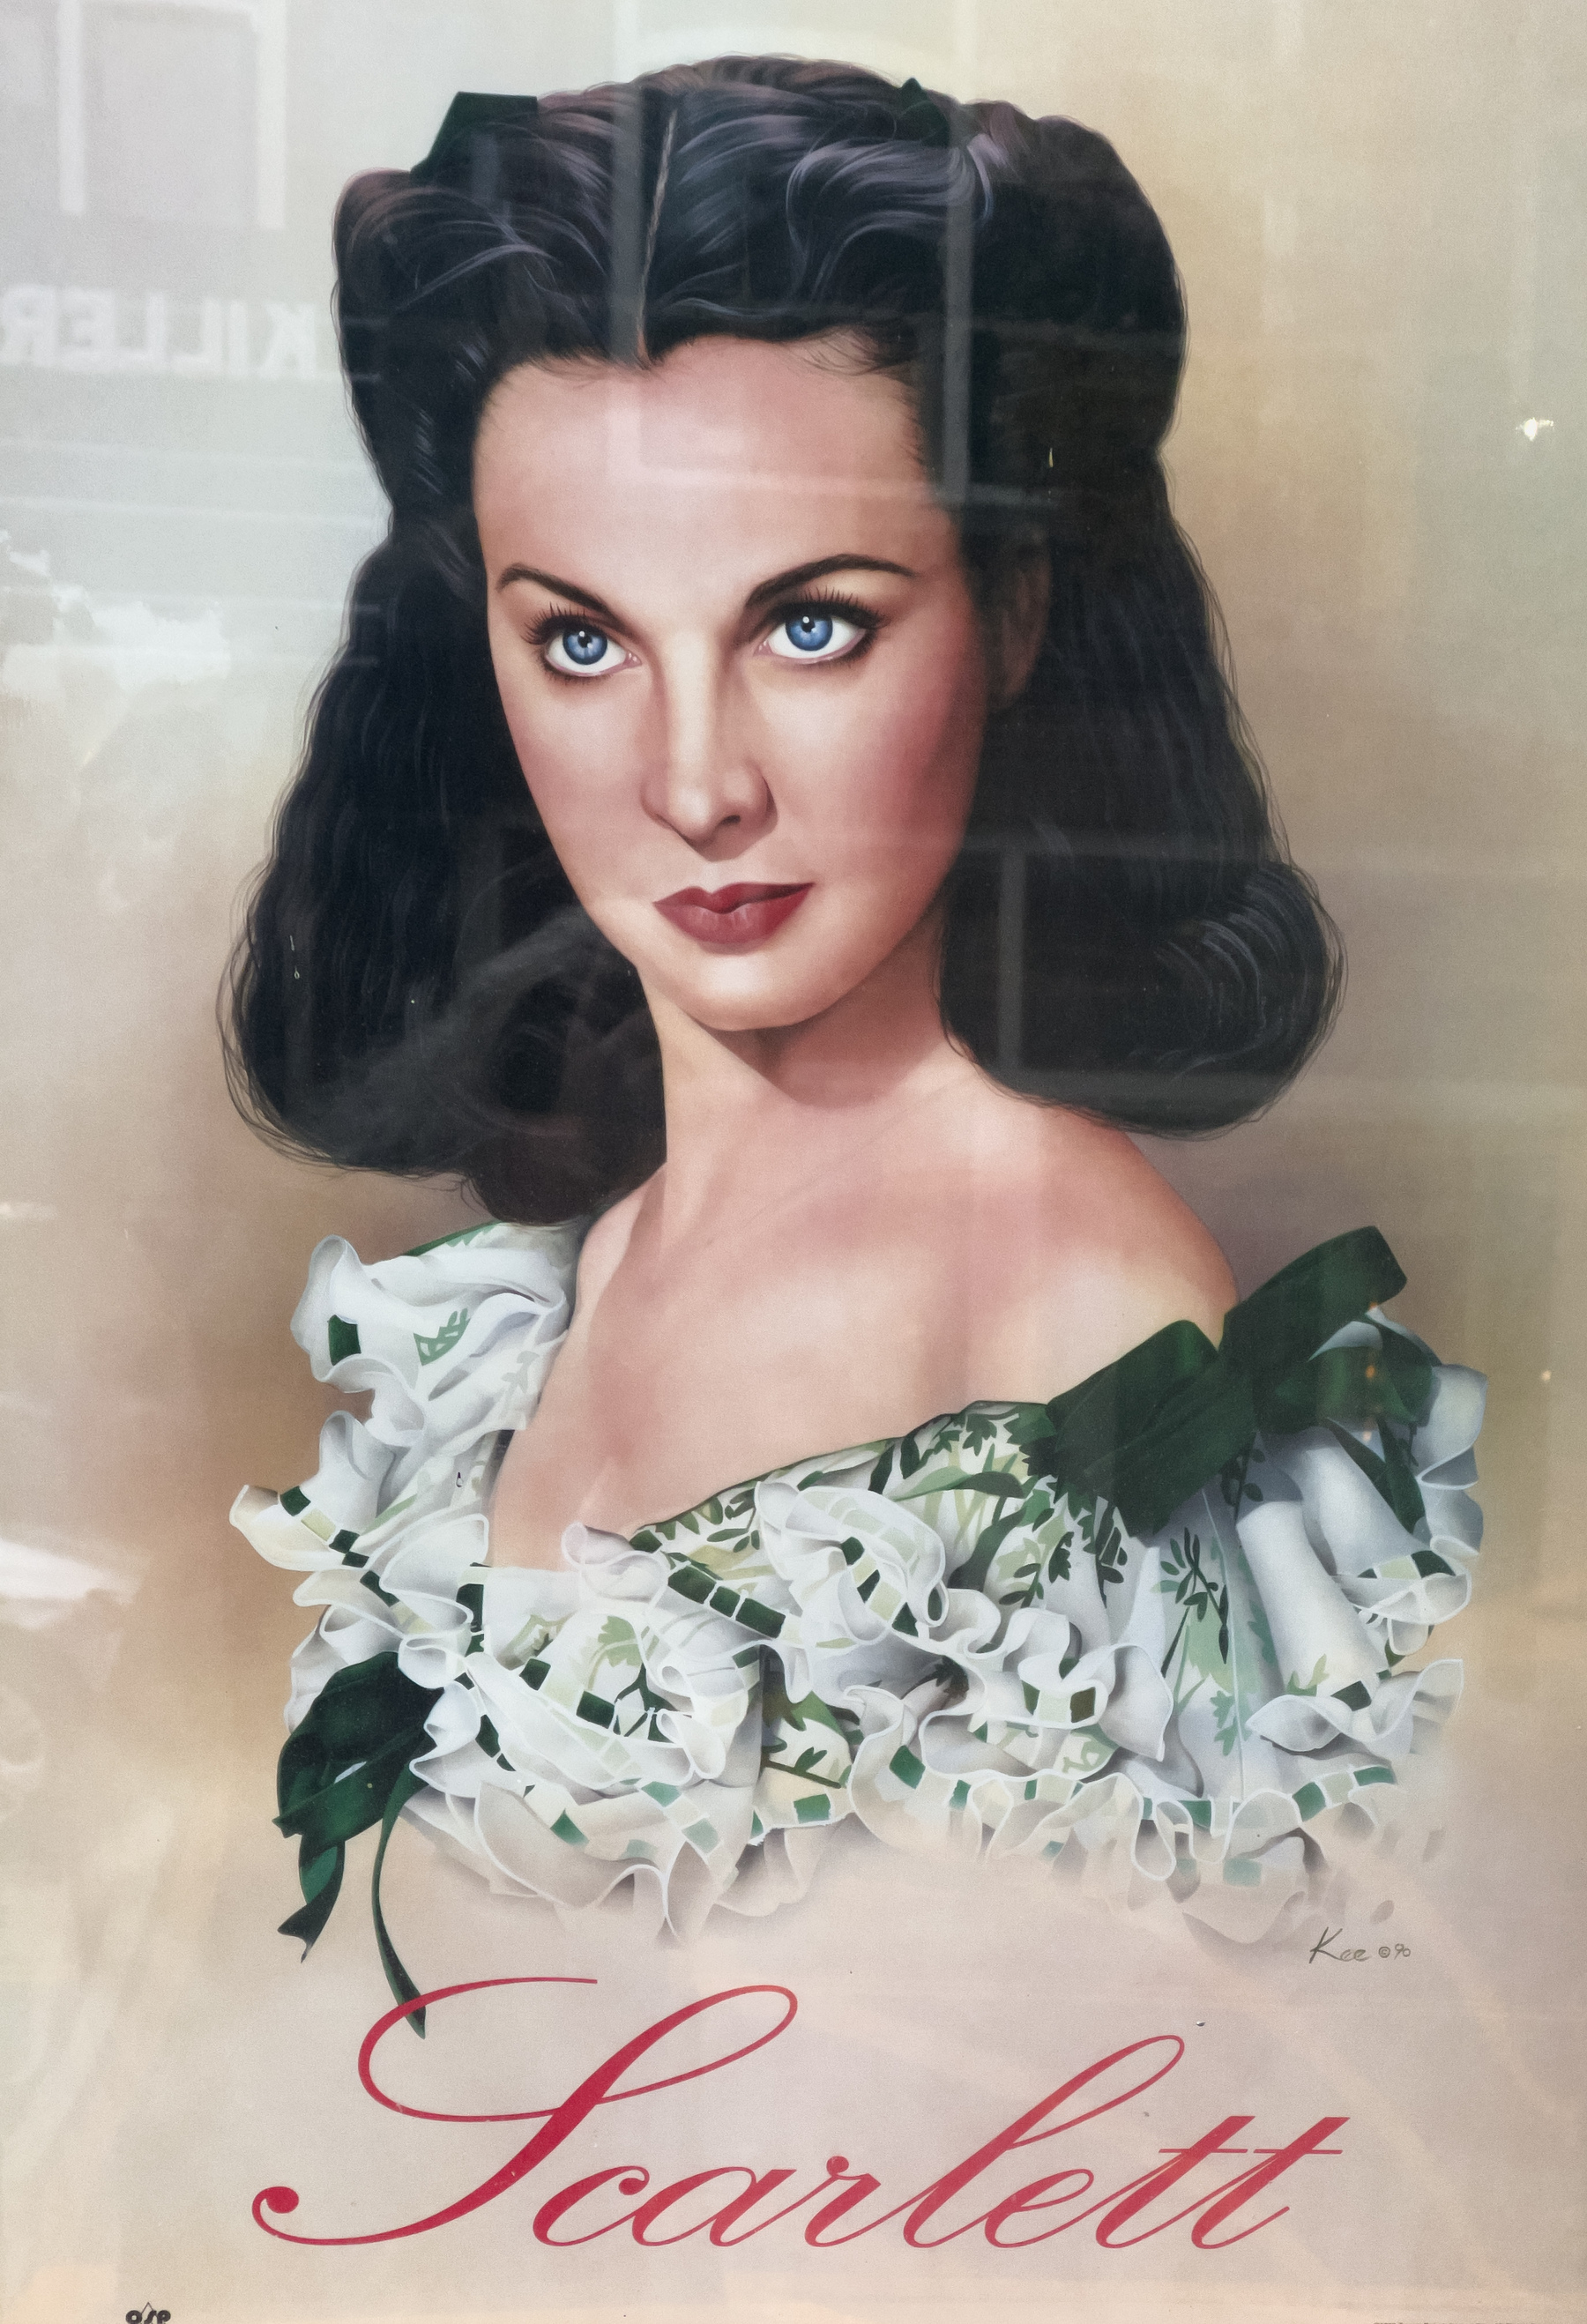 Scarlett O’Hara poster in shop window.